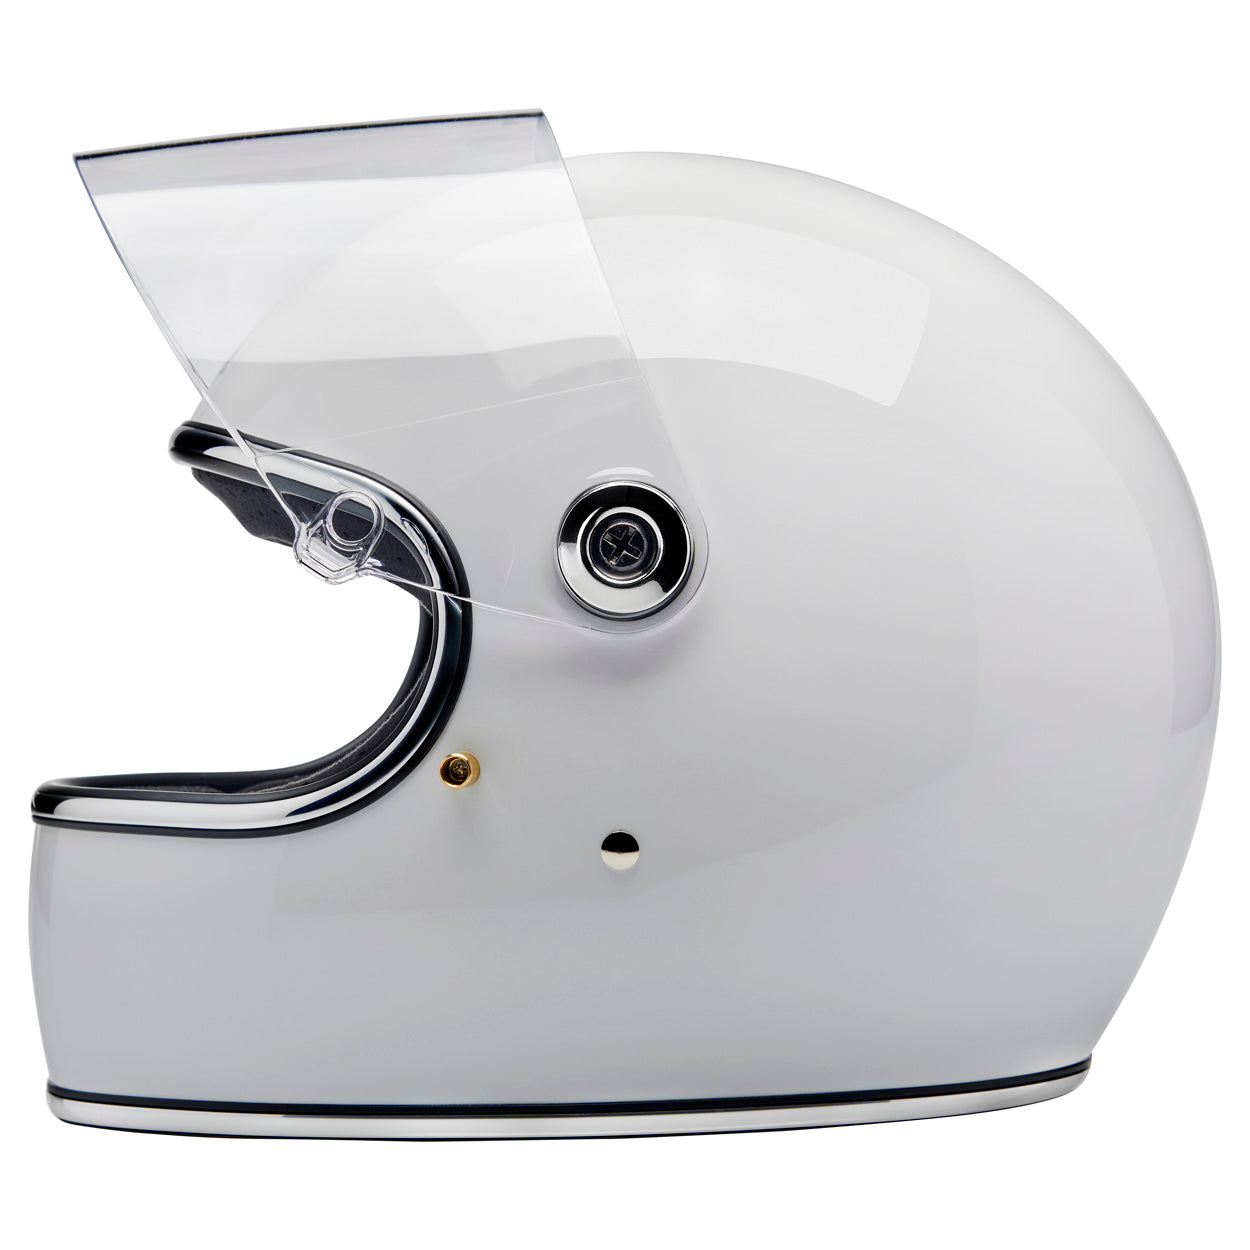 Gringo S ECE R22.06 Helmet - Gloss White